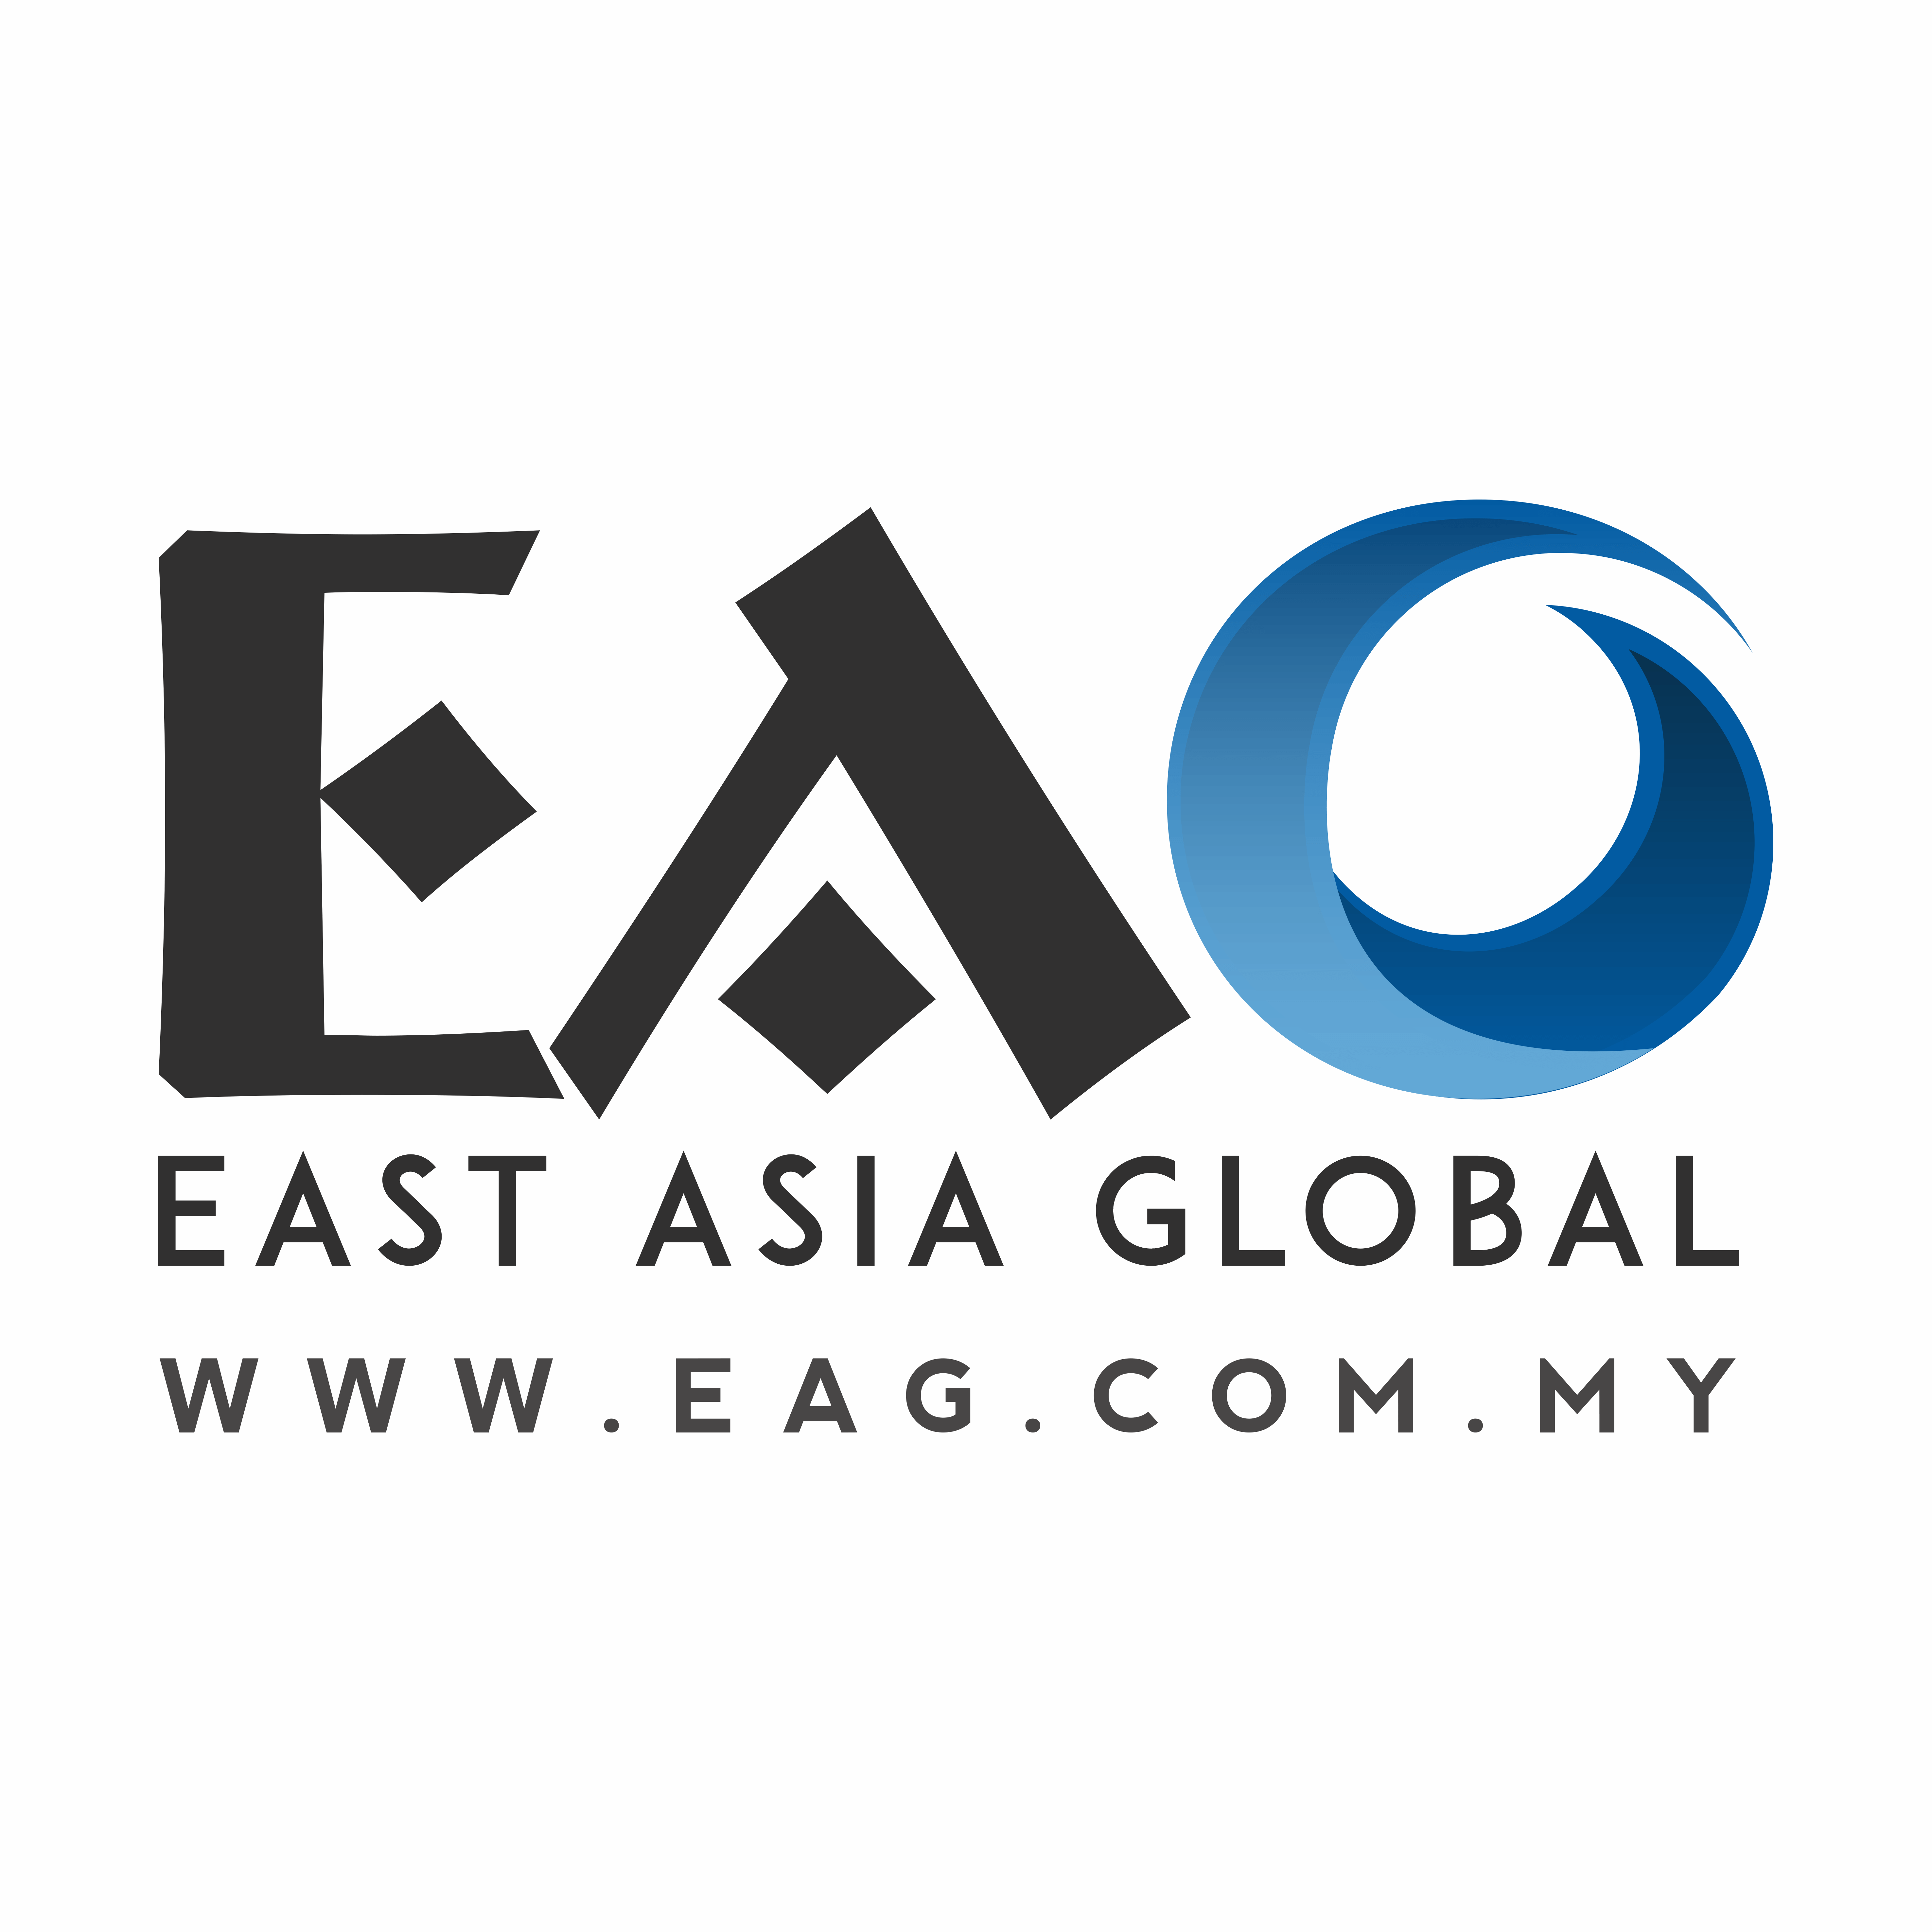 East Asia Global